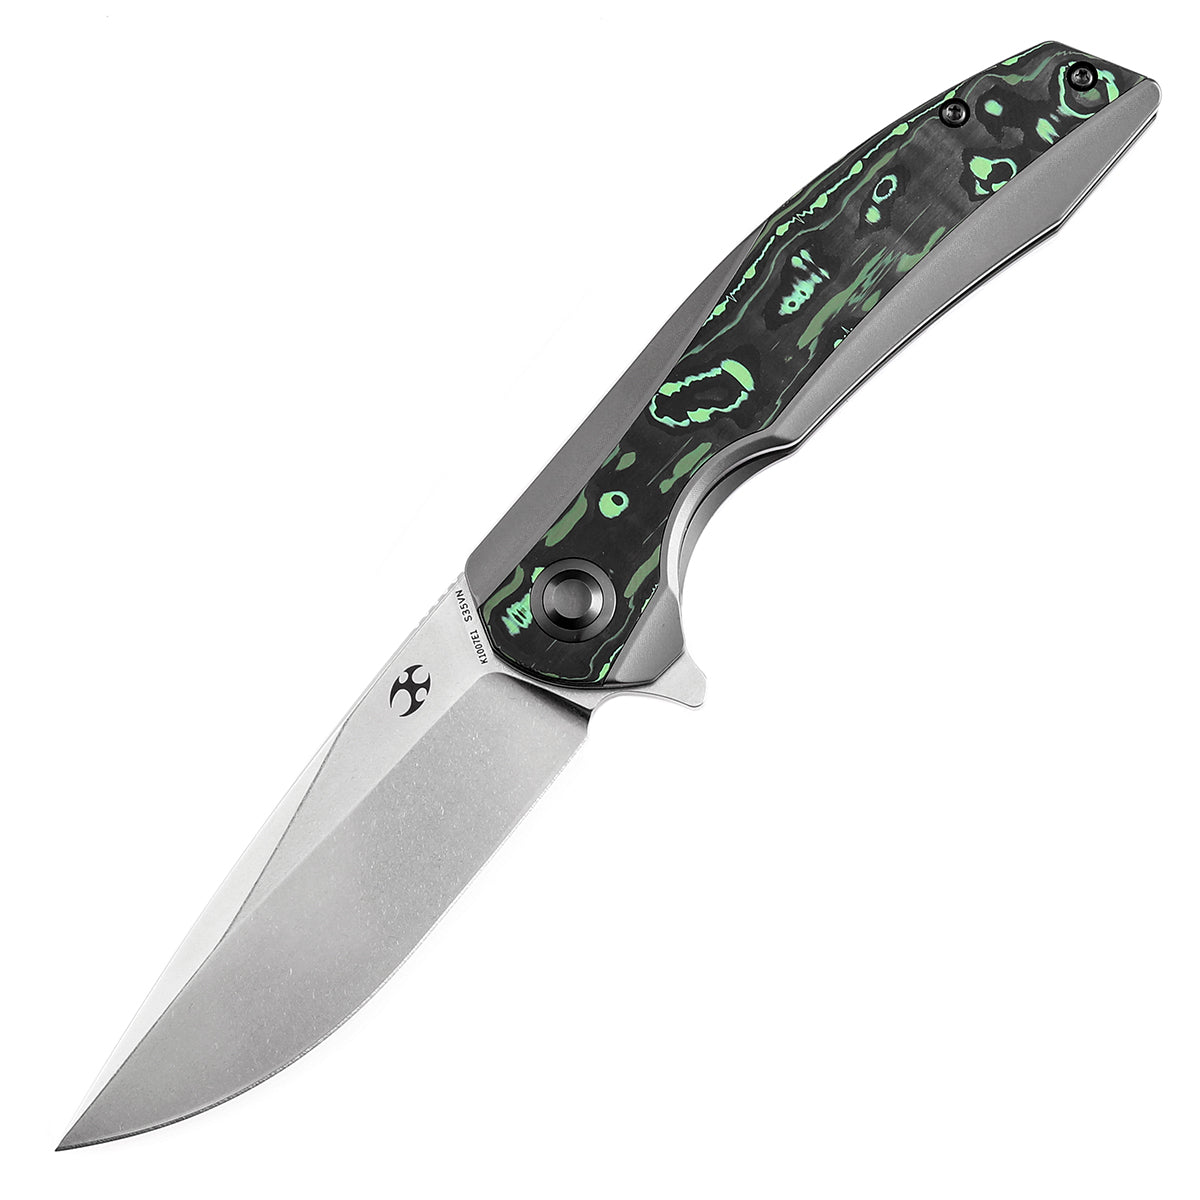 Kansept Accipiter 鳍状刀 K1007E1 CPM S35VN 刀片钛和绿色碳纤维手柄 Edc 刀具